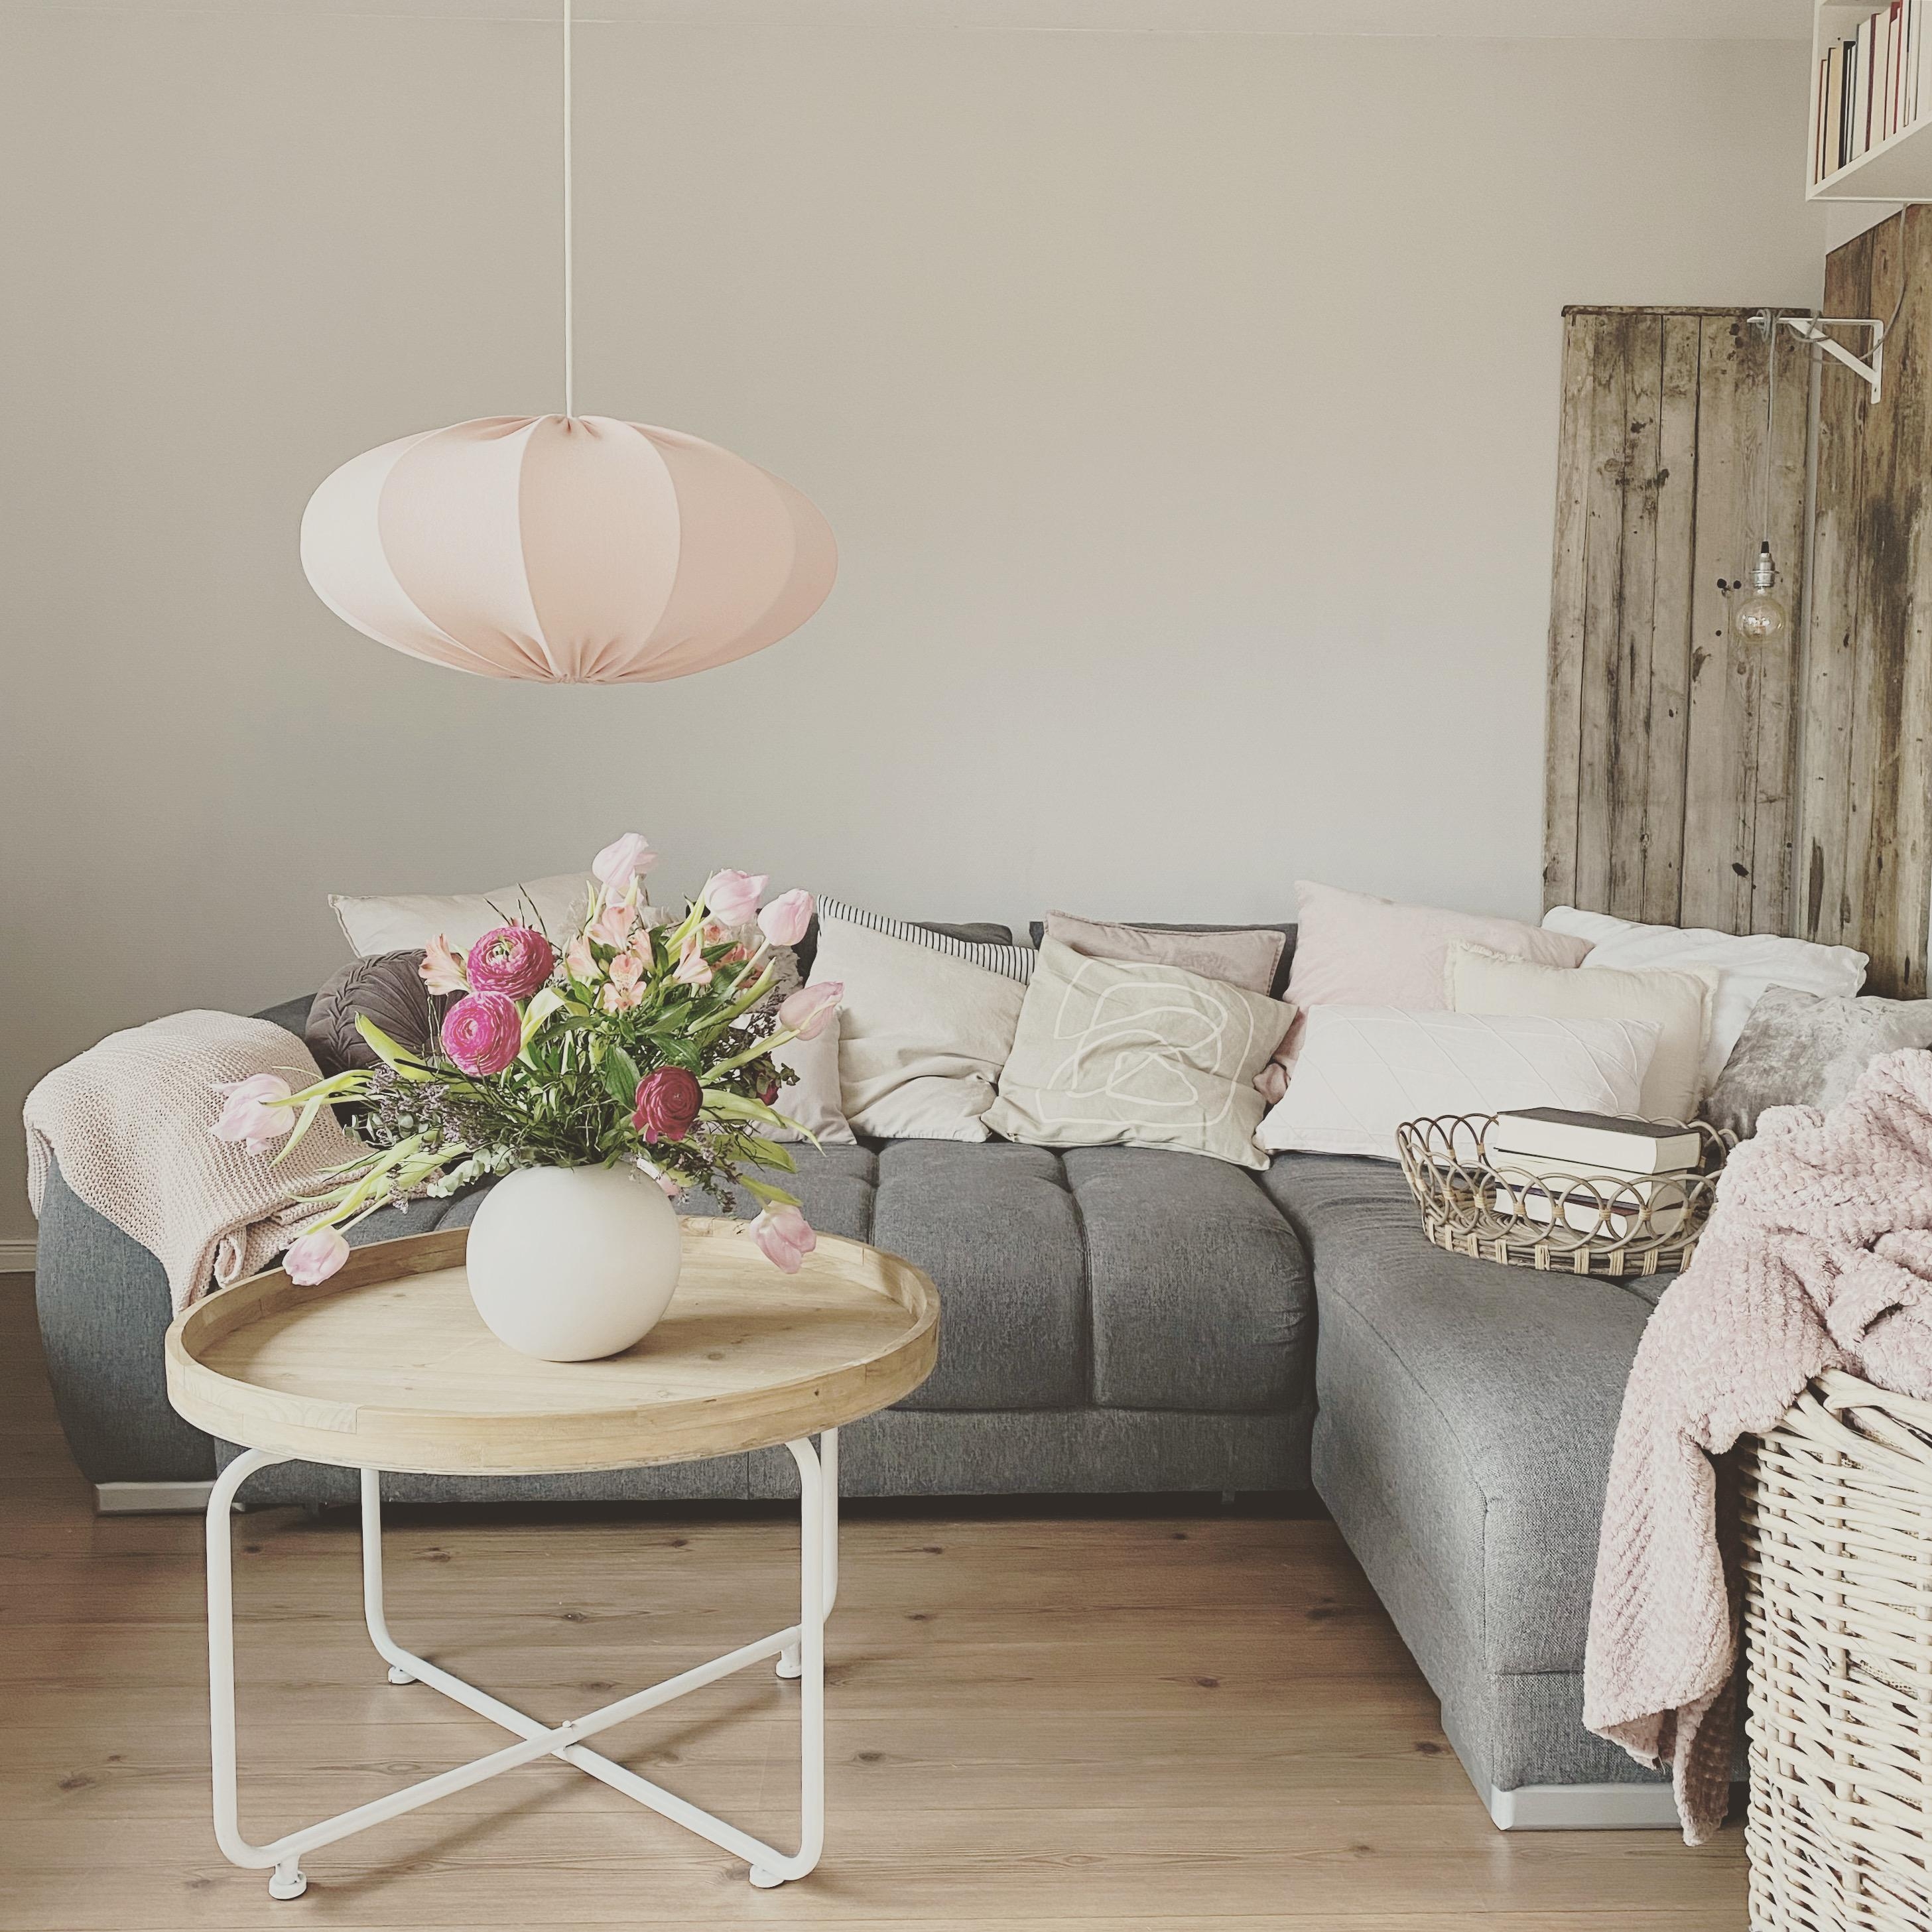 Frisch gestrichen!!
#cozy#homedecor#hygge#flowers#couchstyle